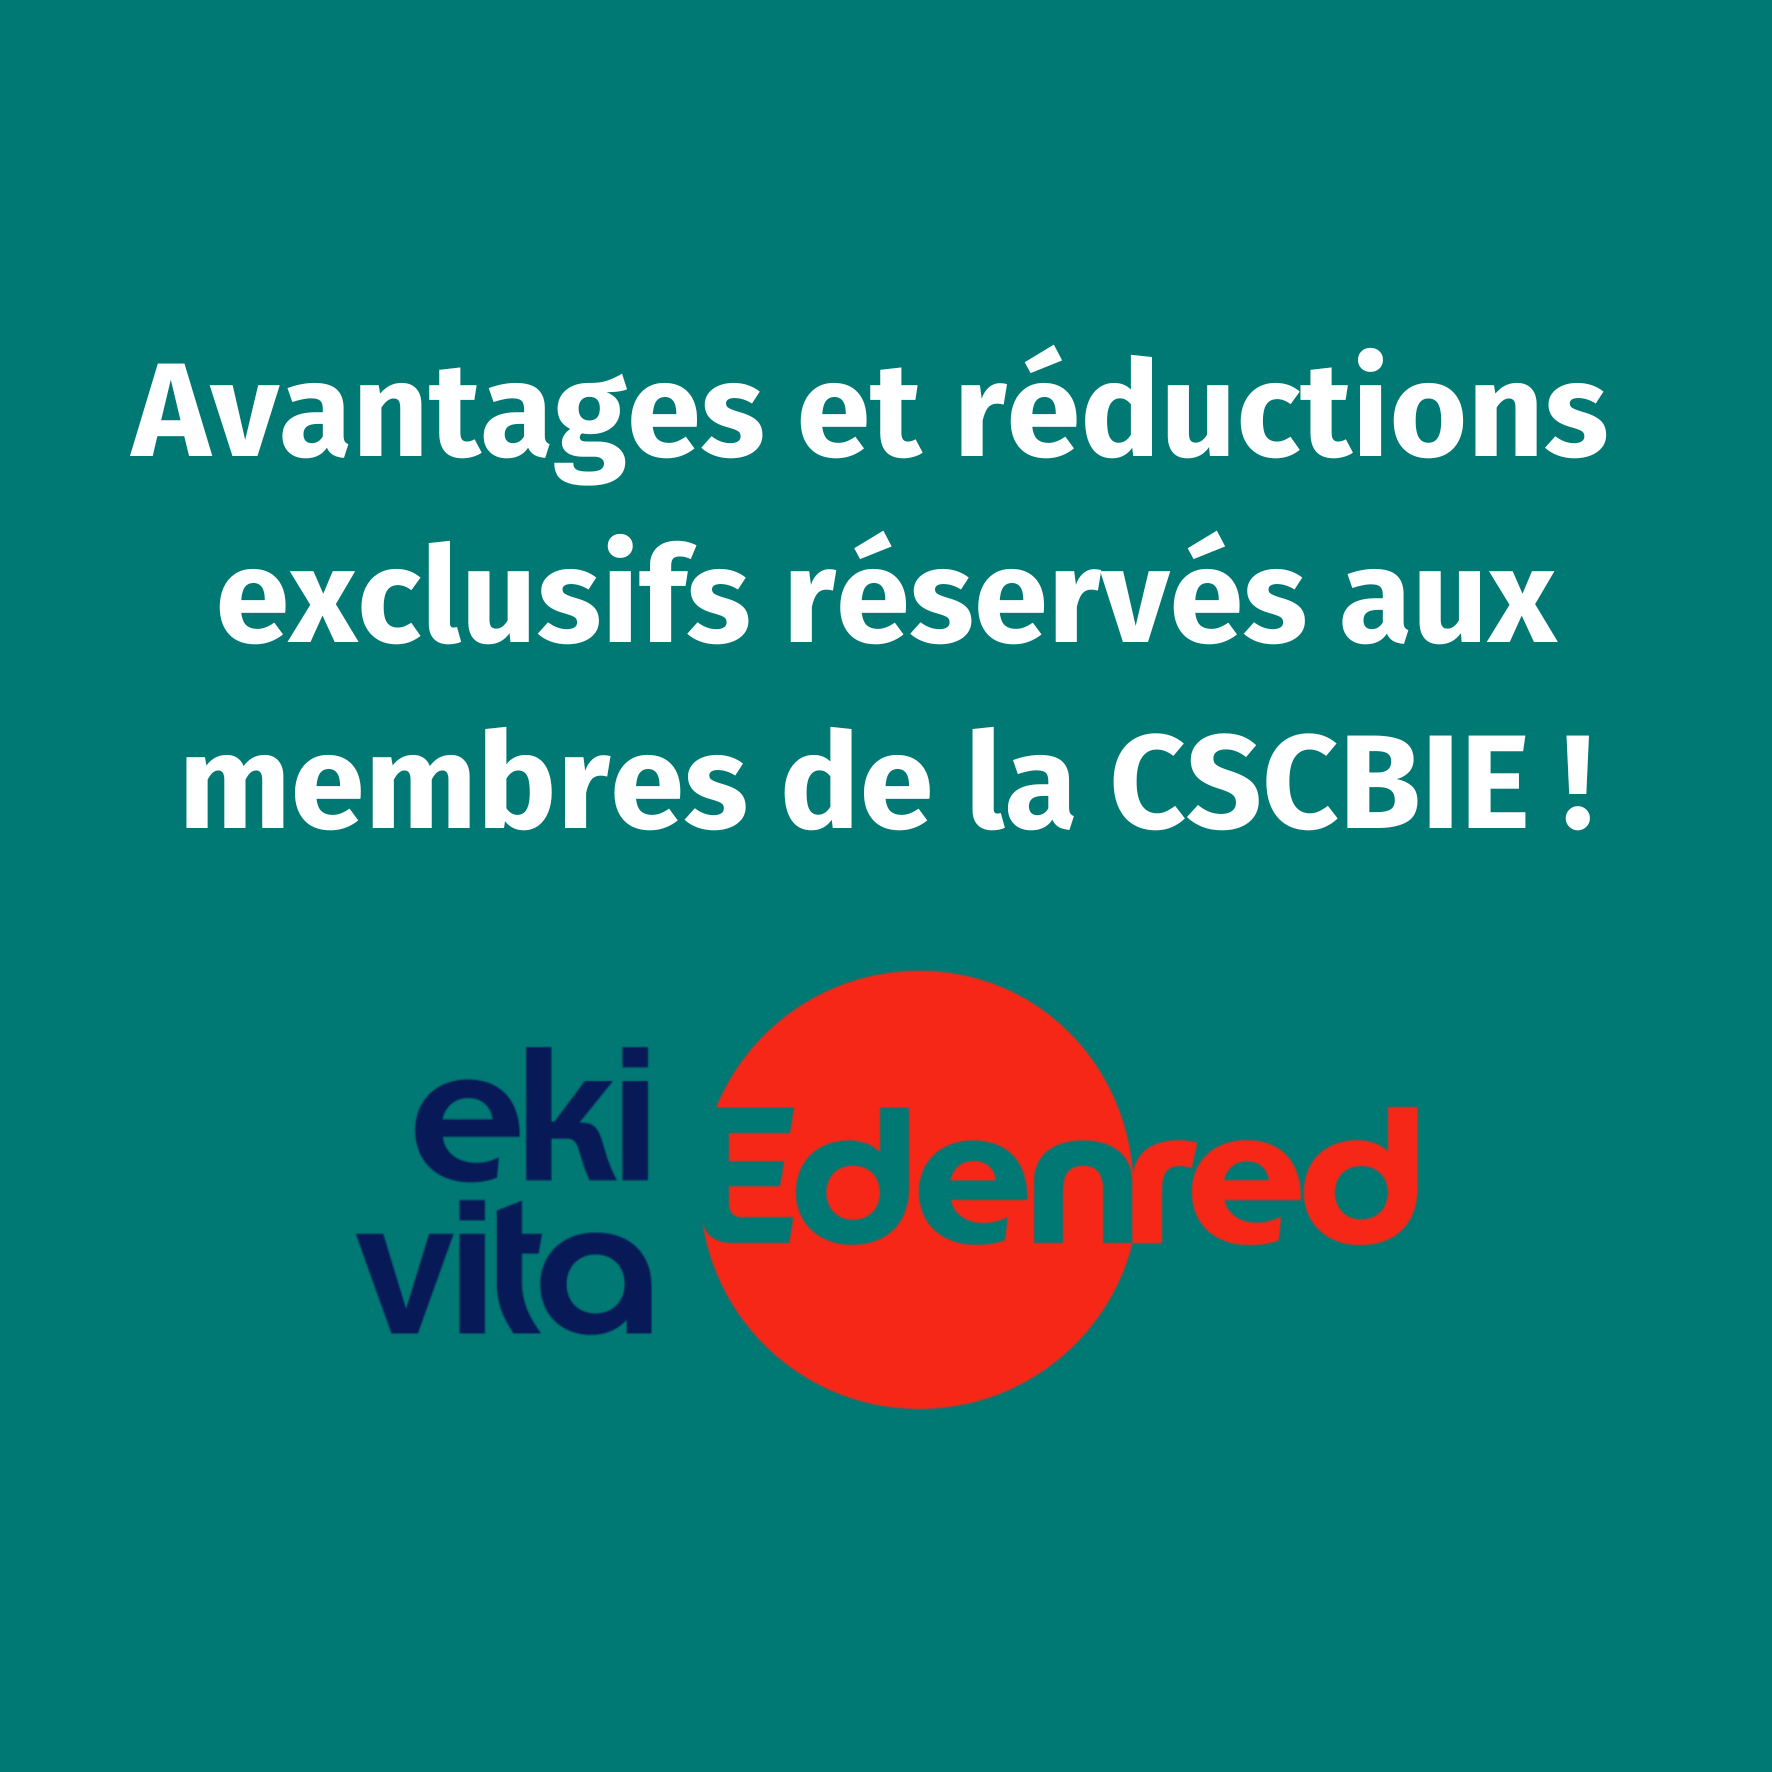 Avantages et réductions exclusifs membres CSCBIE